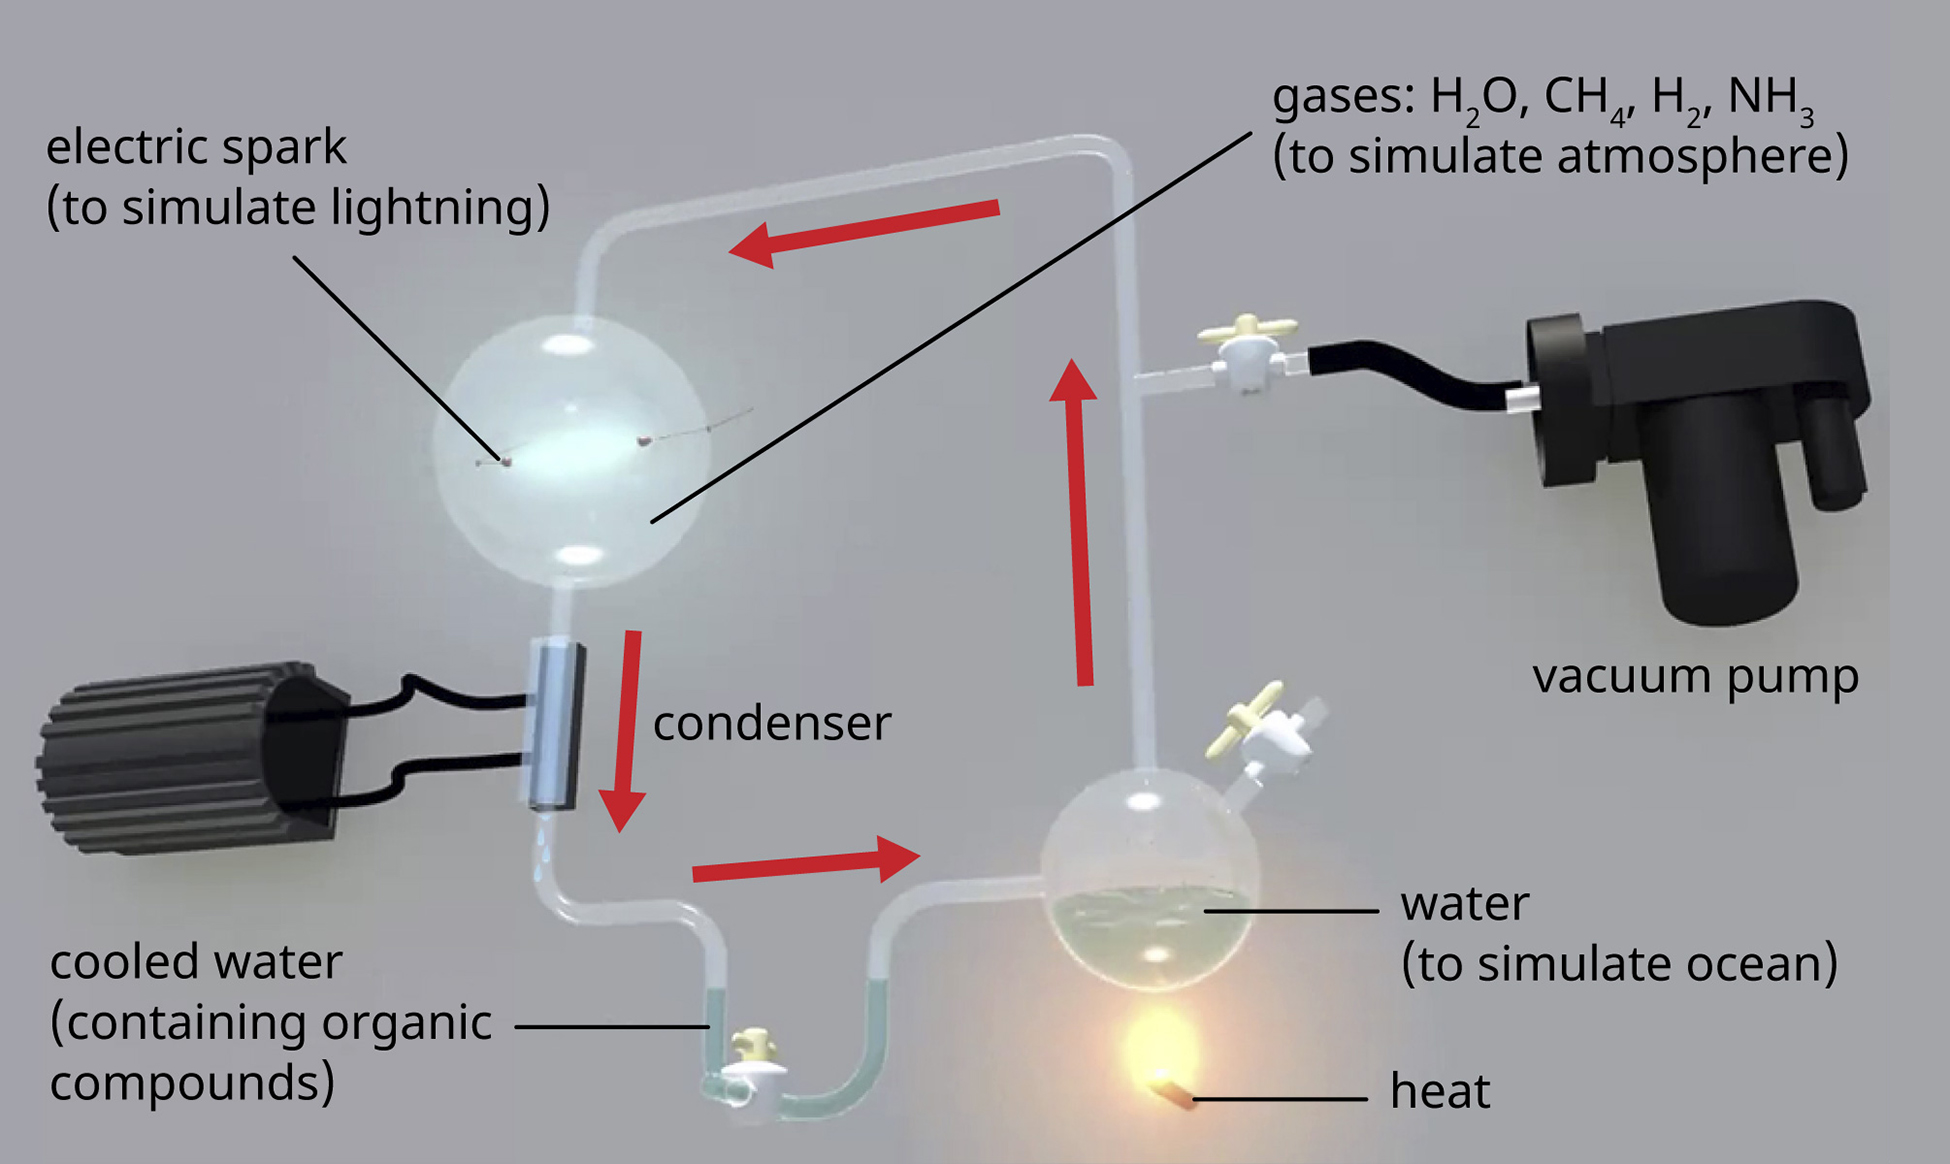 Diagrama del experimento Miller-Urey. Se calienta un matraz de agua (para simular el océano). Esta se conecta a través de tubos de vidrio en circuito cerrado a: una bomba de vacío, un matraz que contiene gases (agua, metano, hidrógeno, amoníaco), y una chispa eléctrica (para simular un rayo), y final a un condensador que enfría el agua. El agua enfriada contiene compuestos orgánicos.